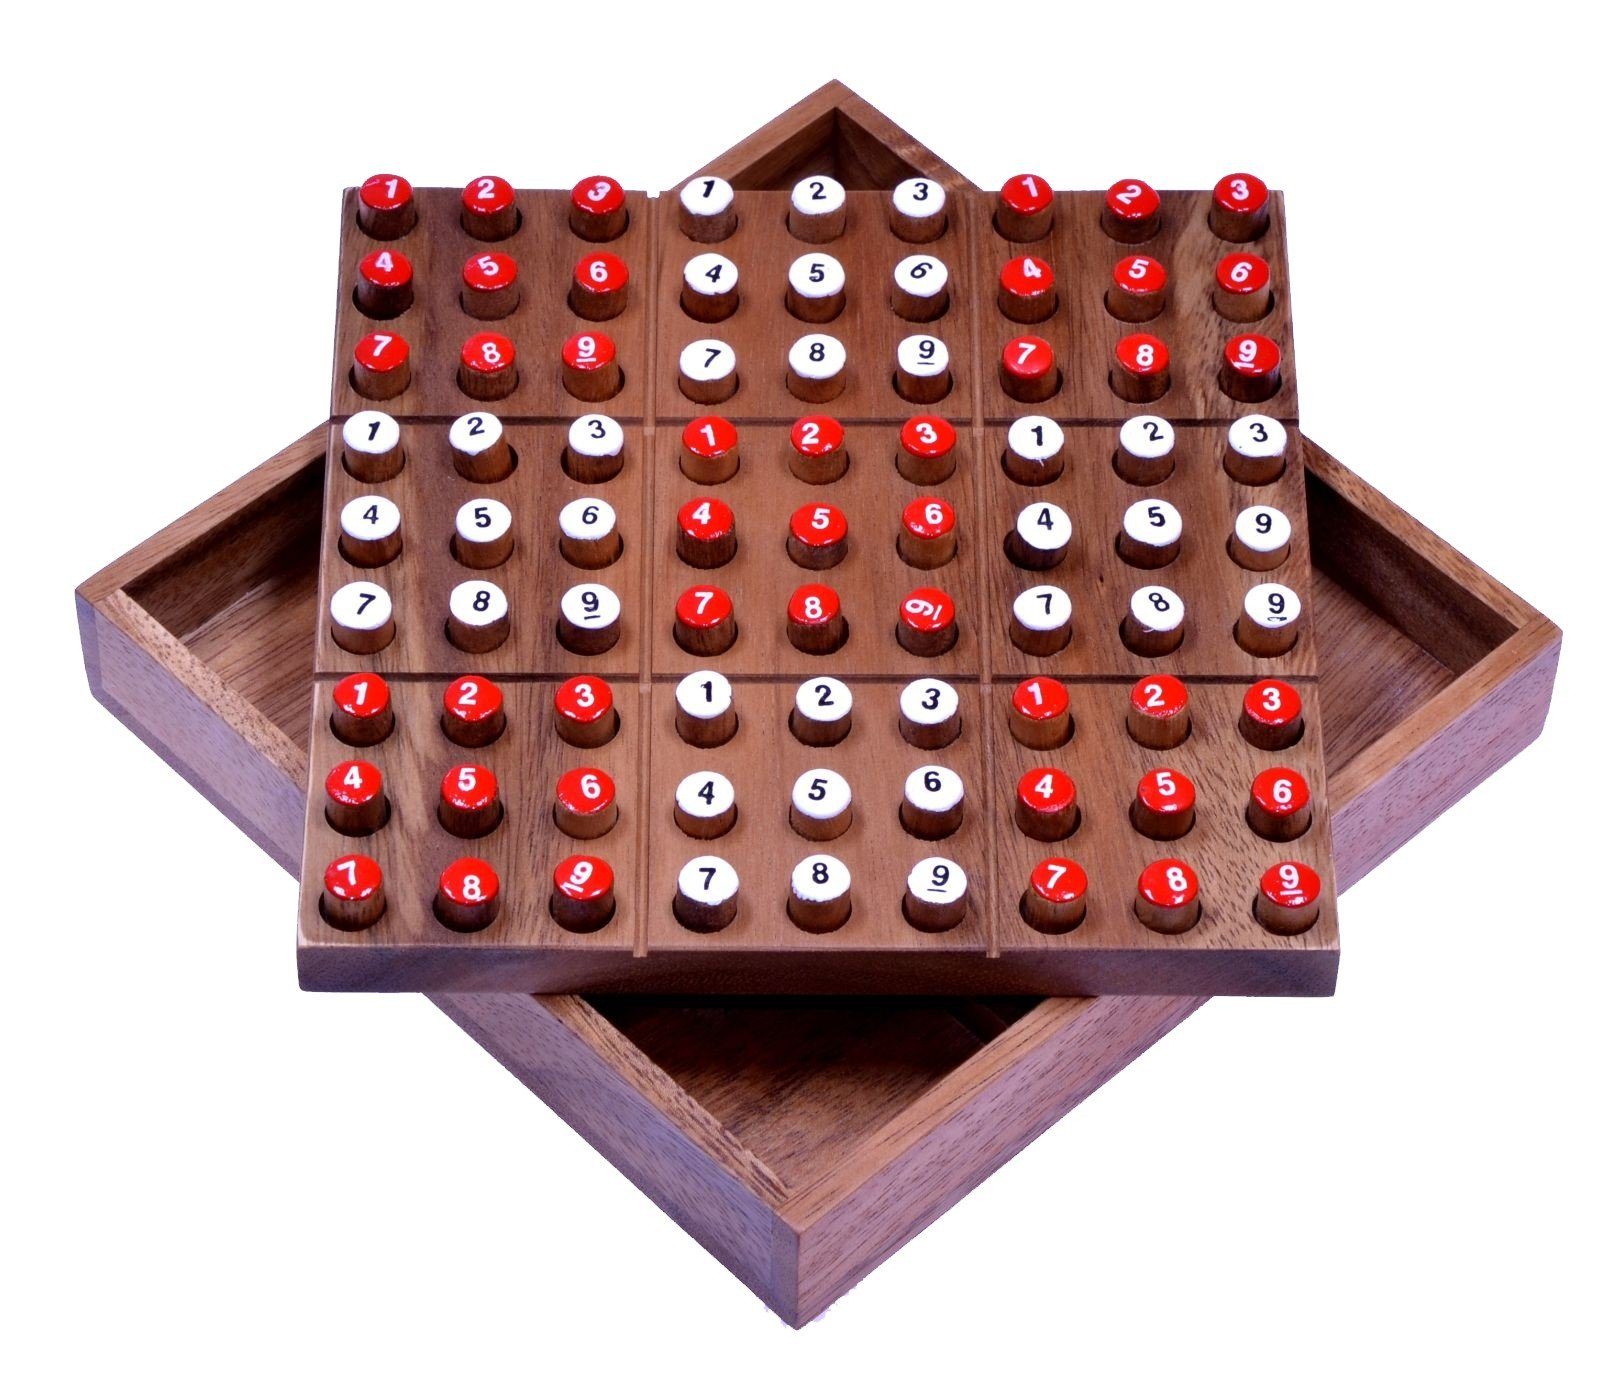 Logoplay Holzspiele Spiel, Sudoku mit Zahlensteckern - Spielfeld 18 x 18 cm - Steckspiel aus HolzHolzspielzeug